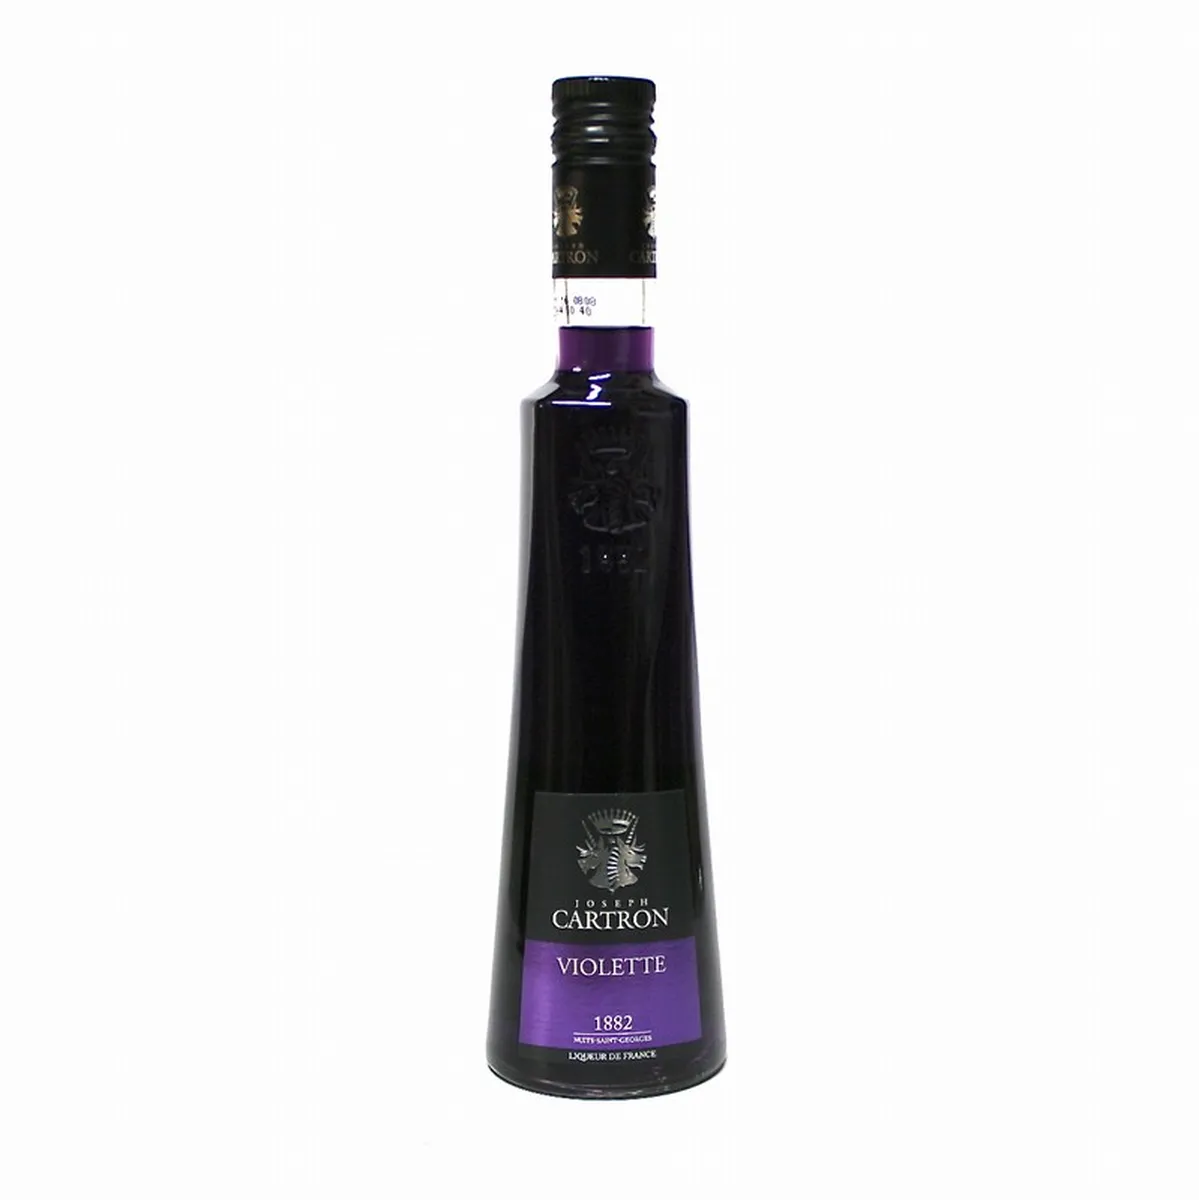 joseph cartron violet liquor 20 ° 50cl